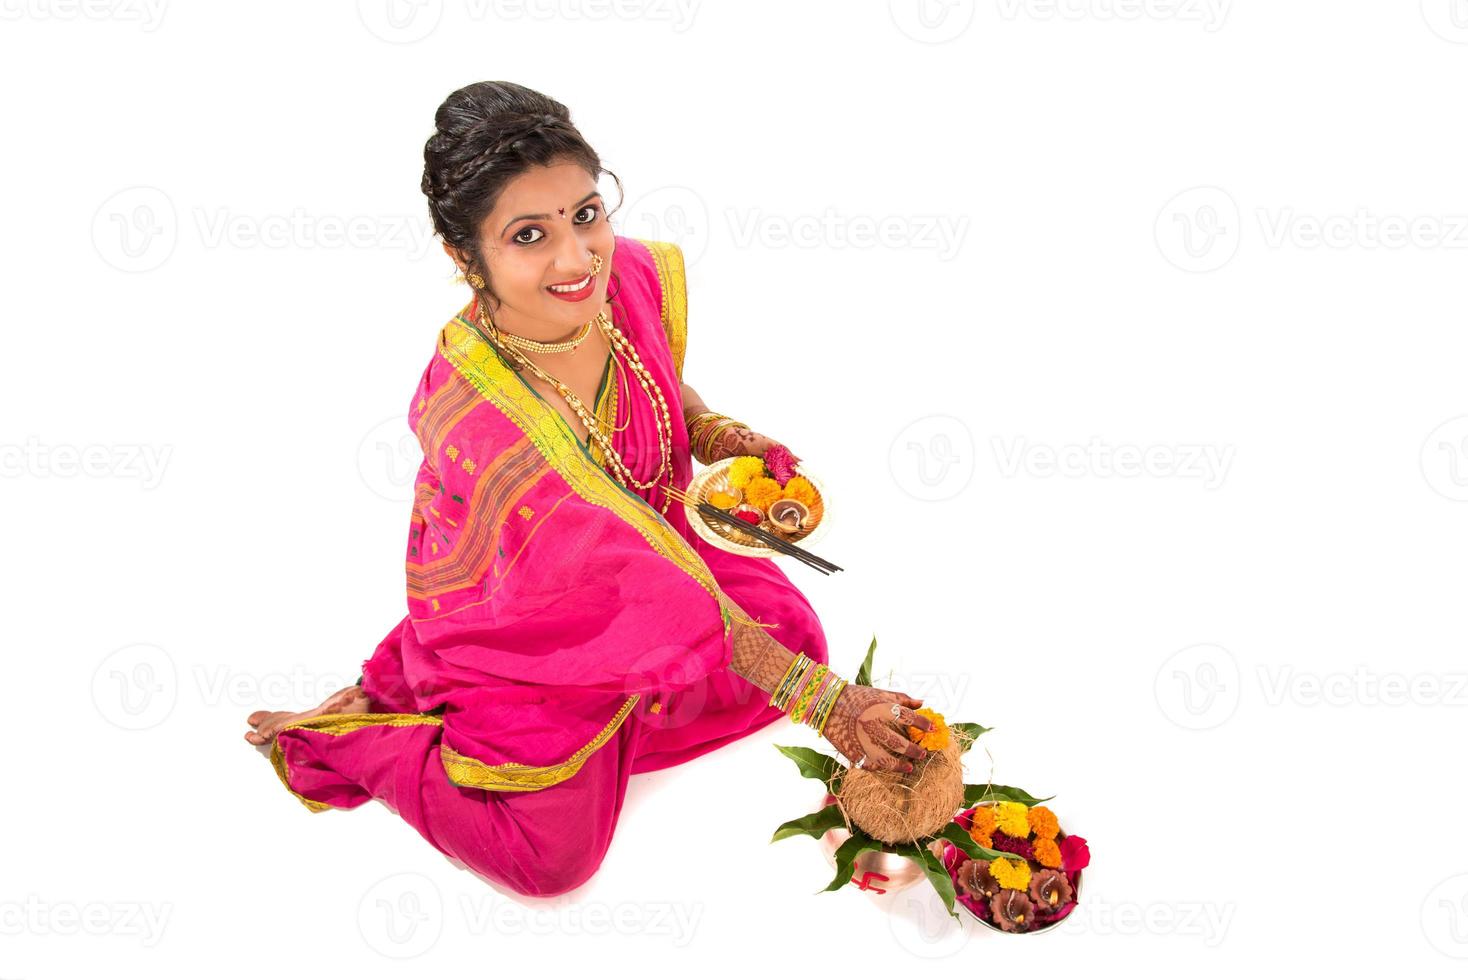 garota tradicional indiana realizando adoração com kalash de cobre, festival indiano, kalash de cobre com coco e folha de manga com decoração floral, essencial no puja hindu. foto